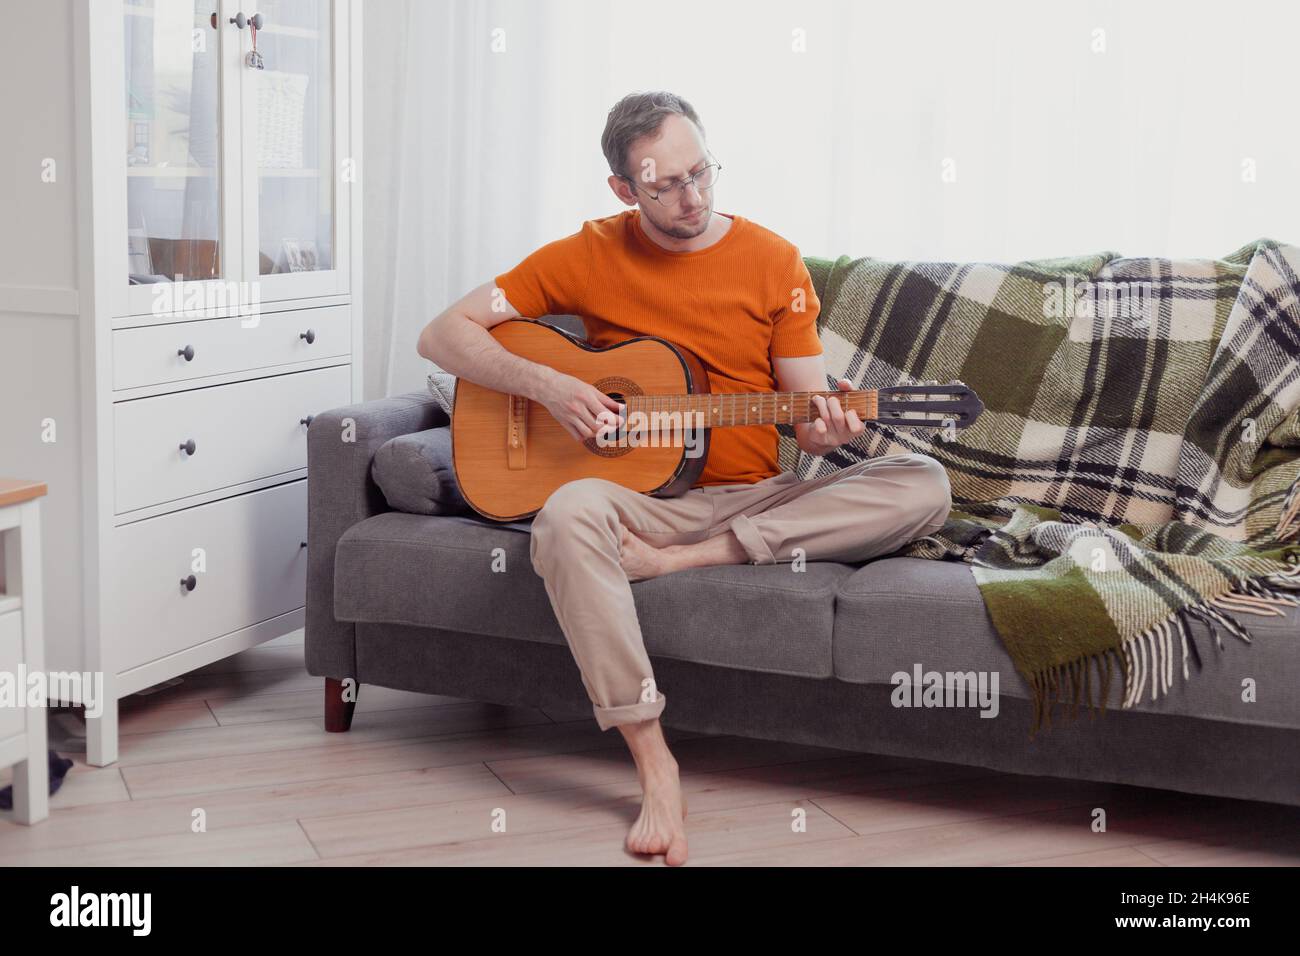 Der junge Kaukasusmann spielt Gitarre und sitzt zu Hause auf der Couch. Üben Sie Musik, Lifestyle-Foto. Stockfoto